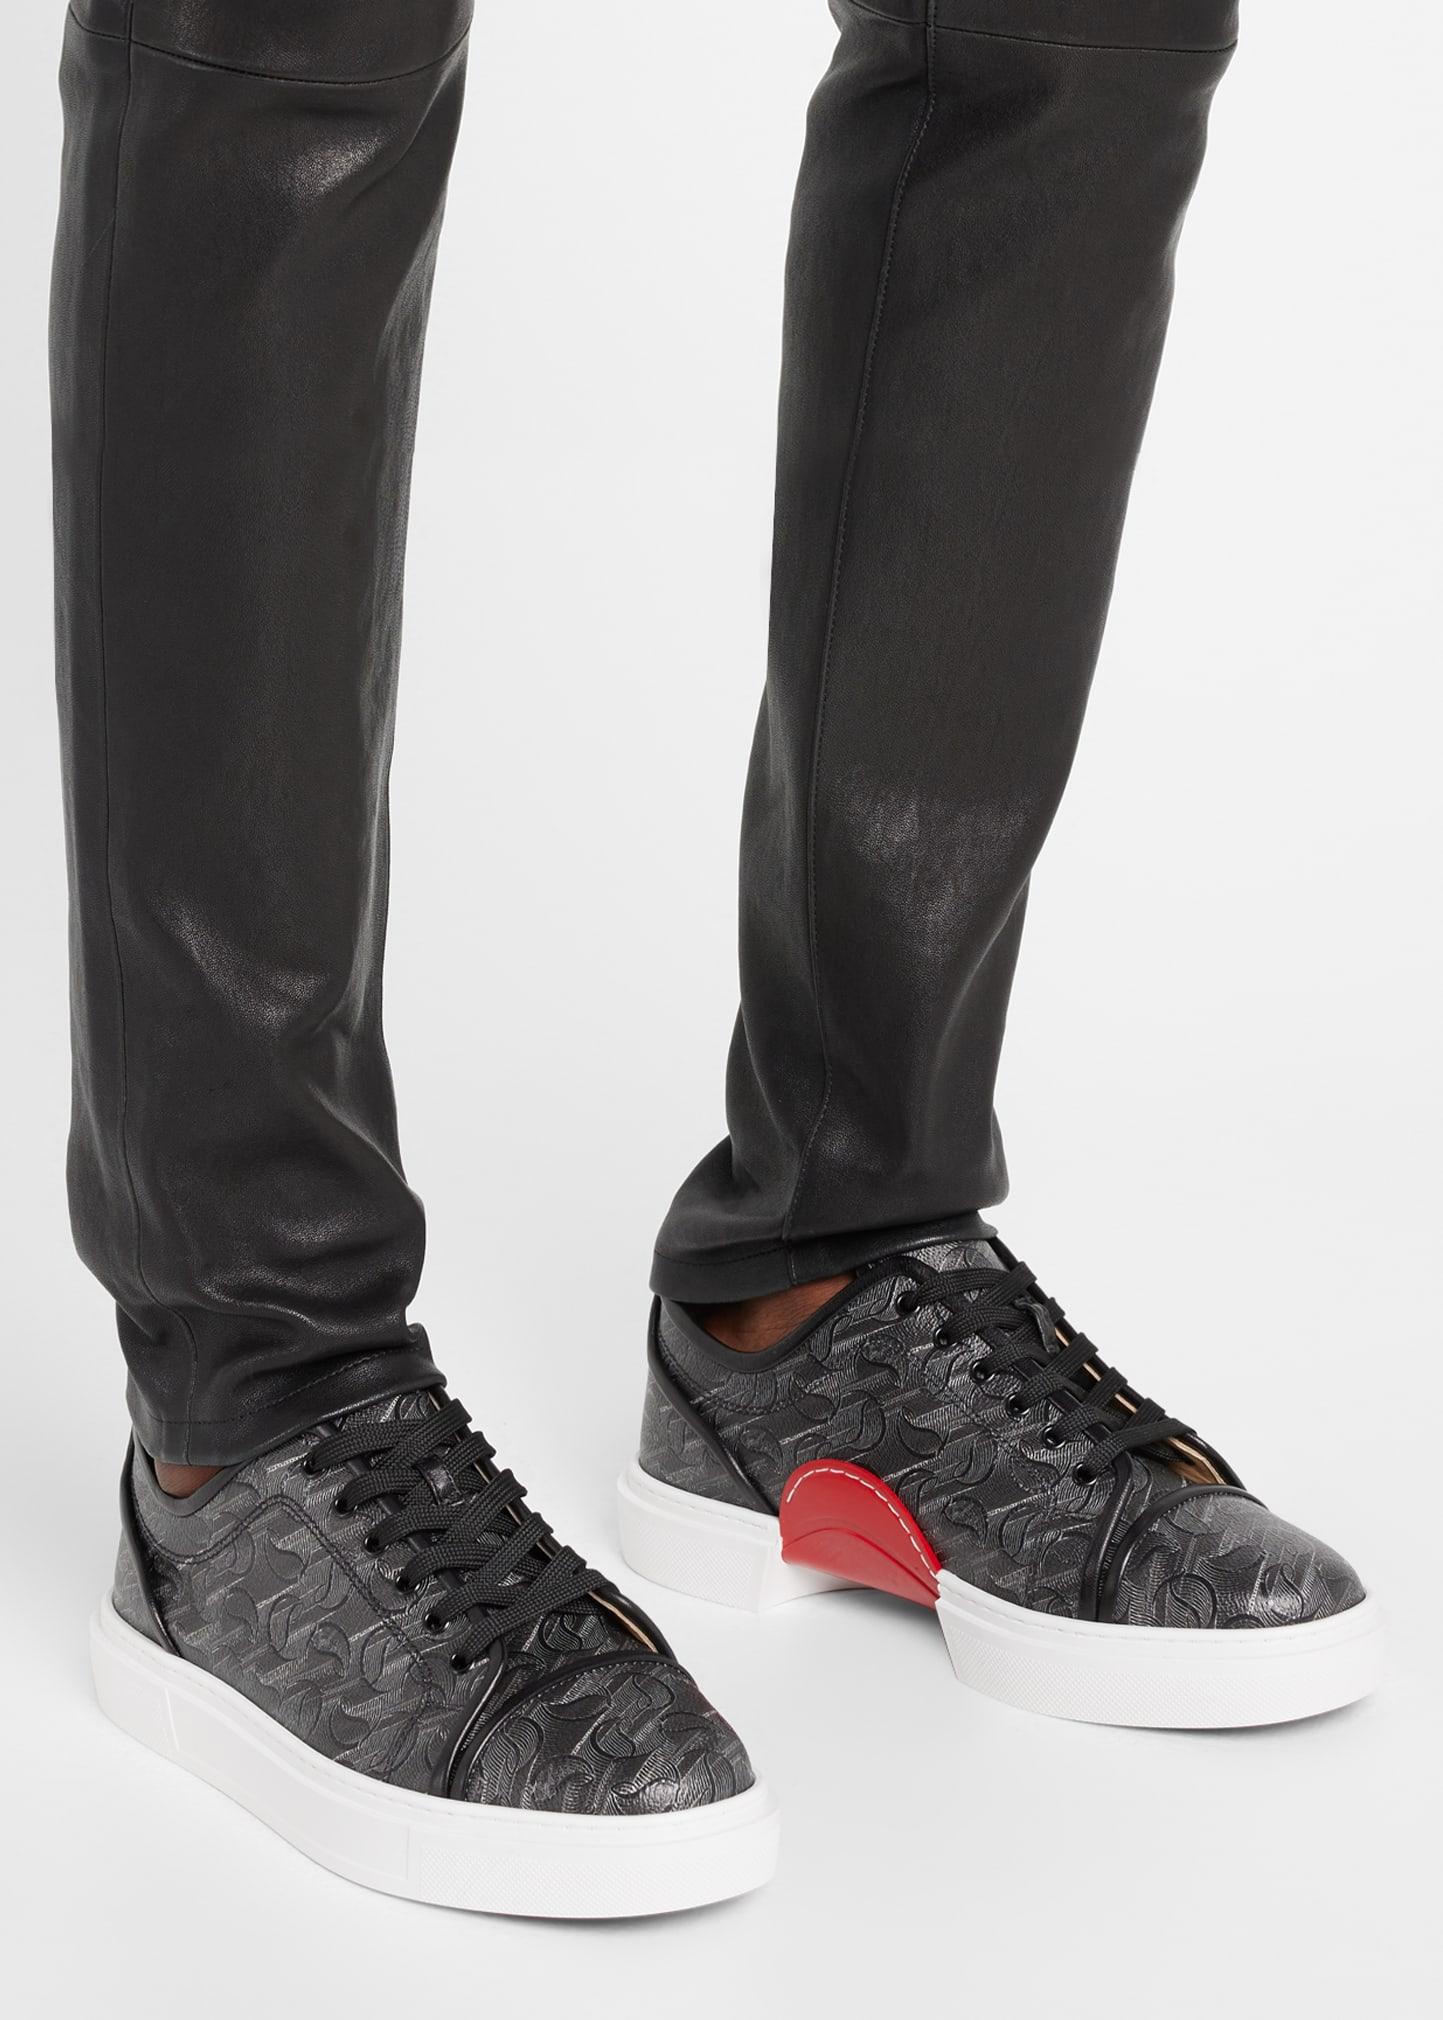 Christian Louboutin Adolon Junior Leather White Sneakers New